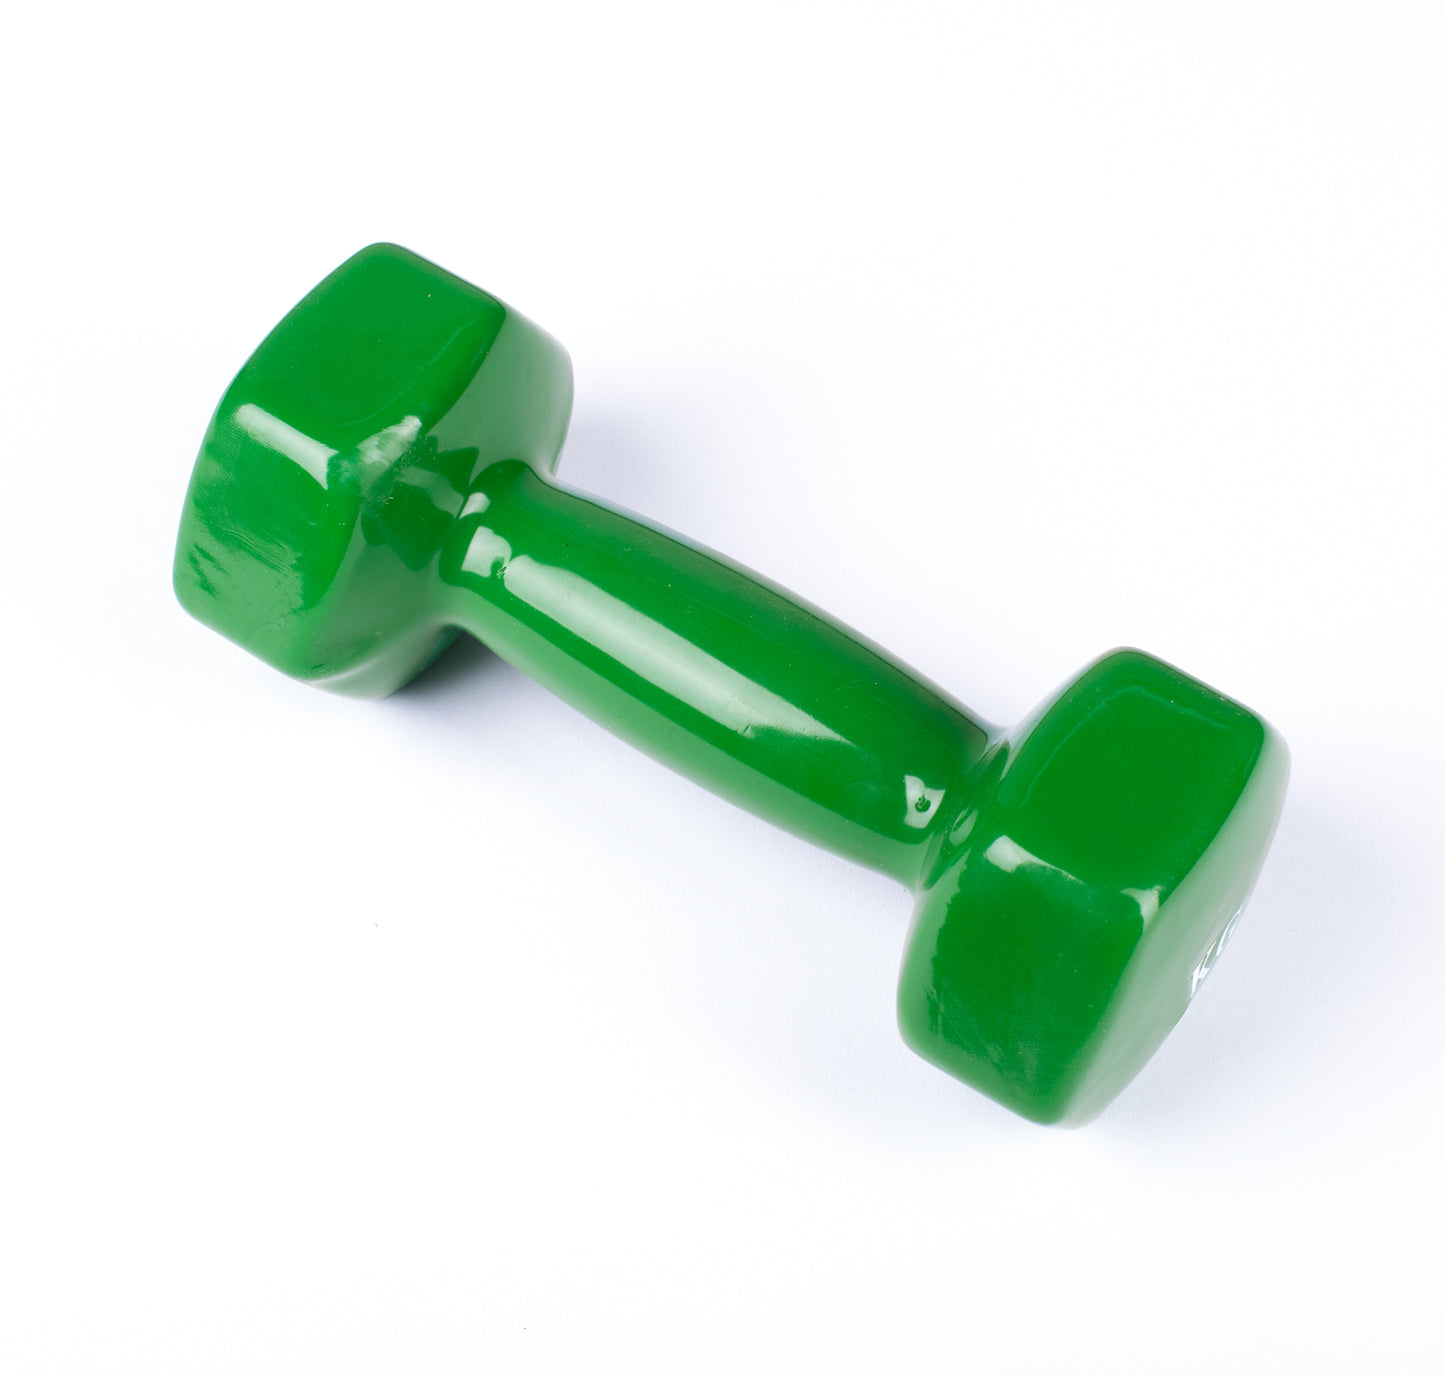 دامبل حديد للتمارين الرياضية بطبقة من الفينيل - لون اخضر - قطعة واحدة - وزن 5 كيلو